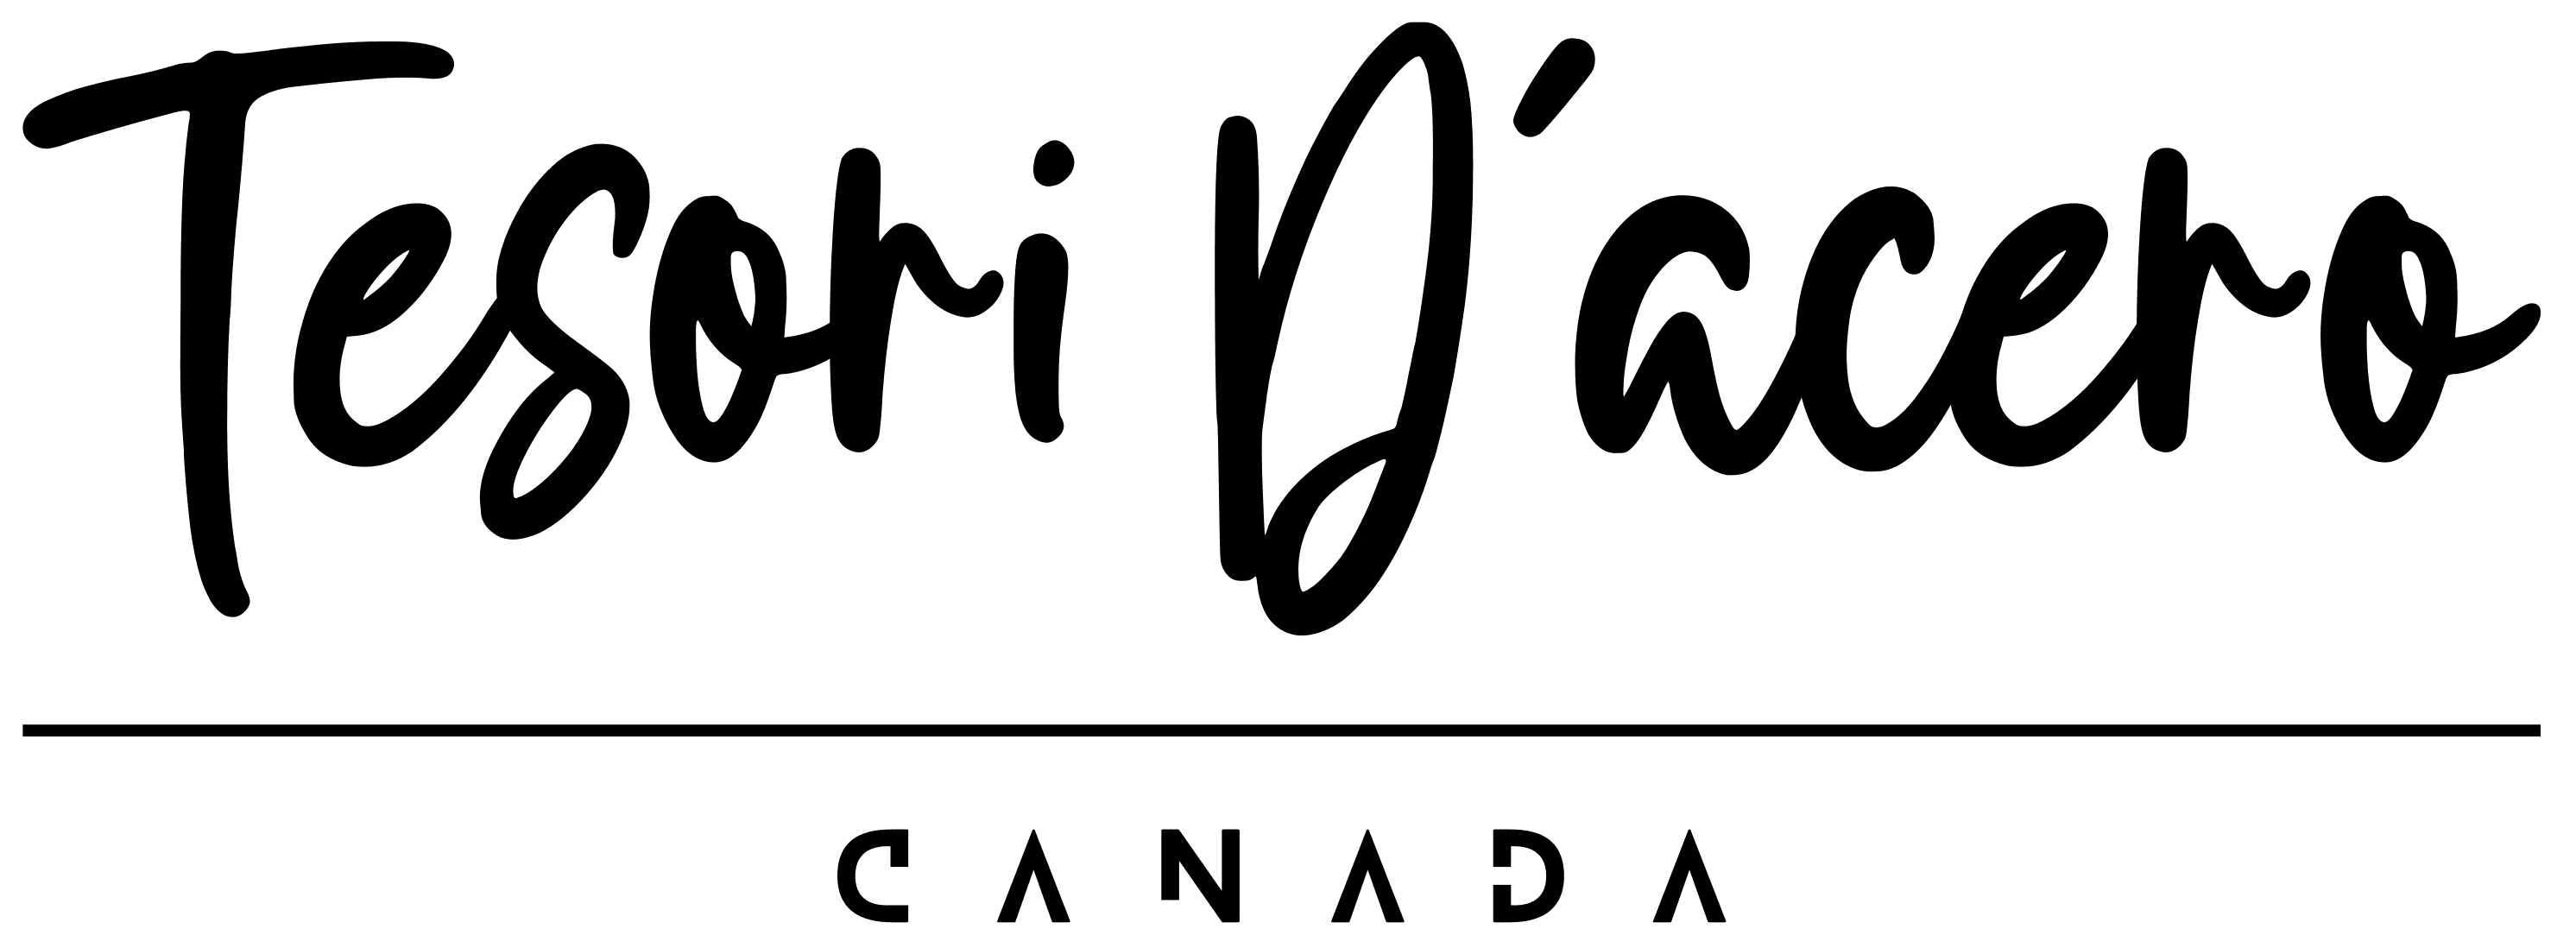 Tesori d'acero, negozio di alimentari canadese